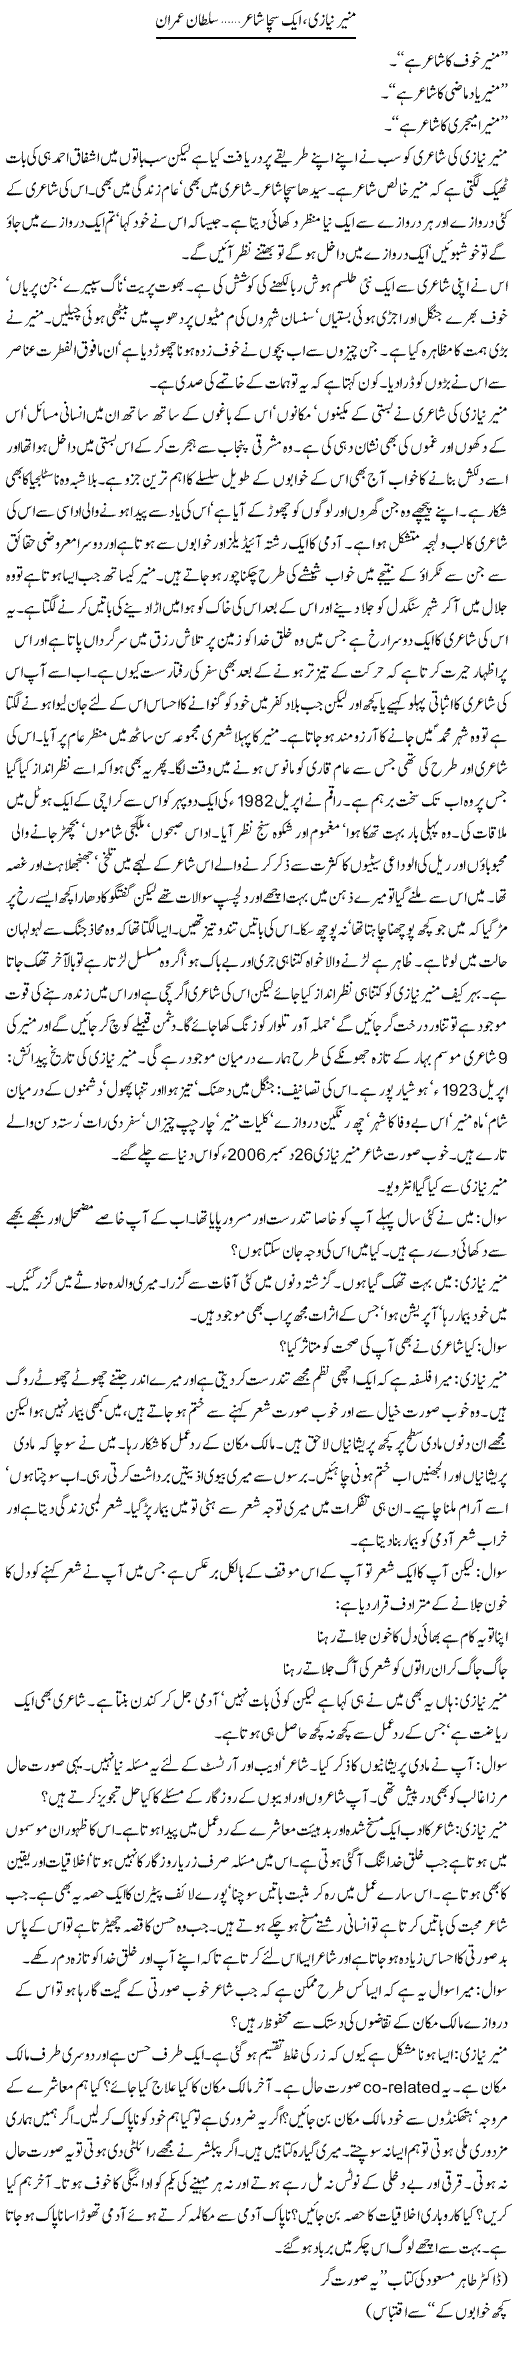 Munir Niazi, Aik Sacha Shair (2) | Sultan Imran | Daily Urdu Columns